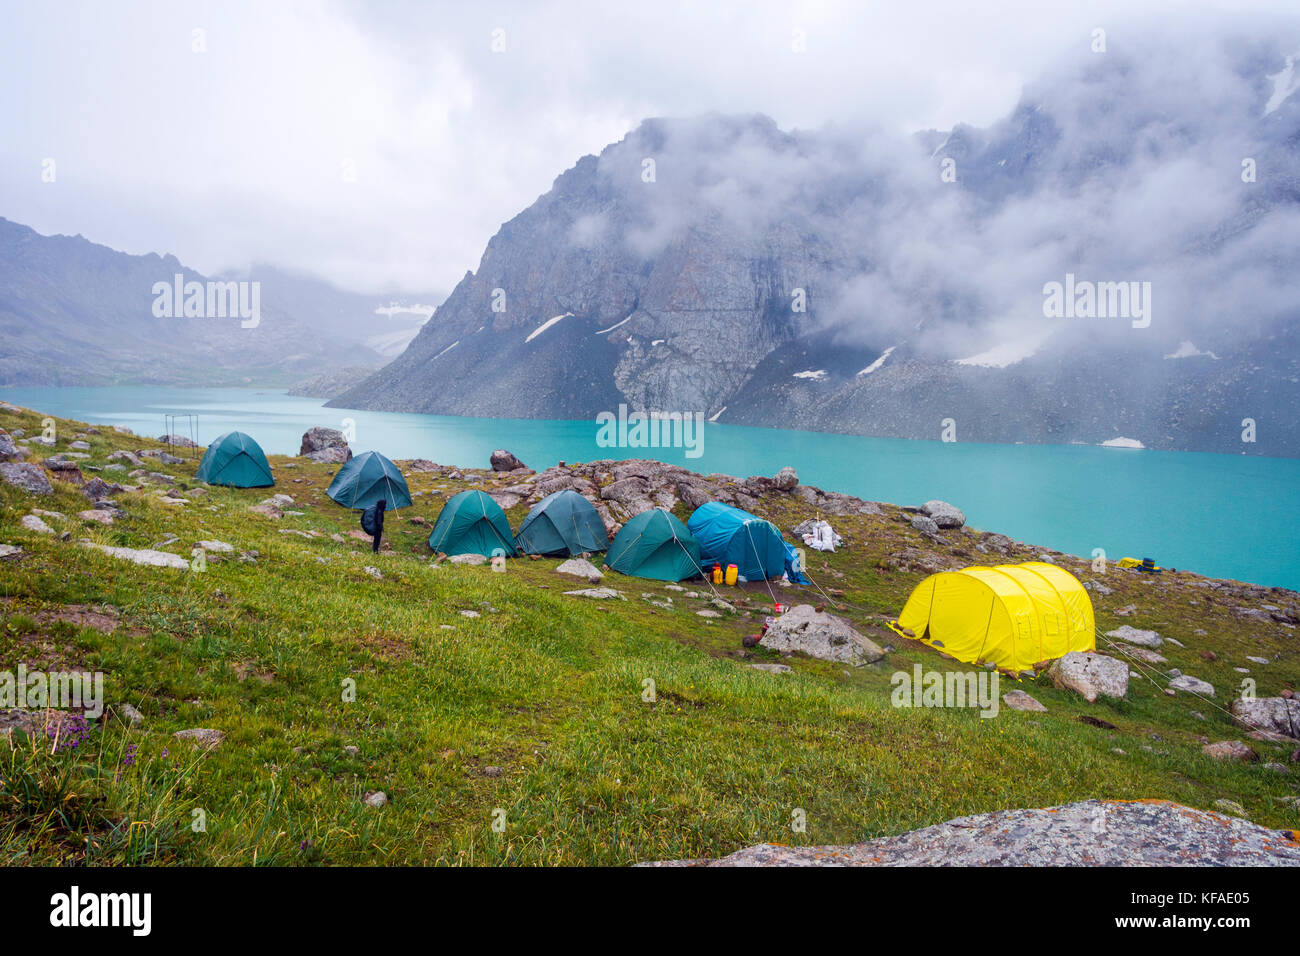 Campamento base por ala kul, Parque Nacional lago karakol, Kirguistán Foto de stock